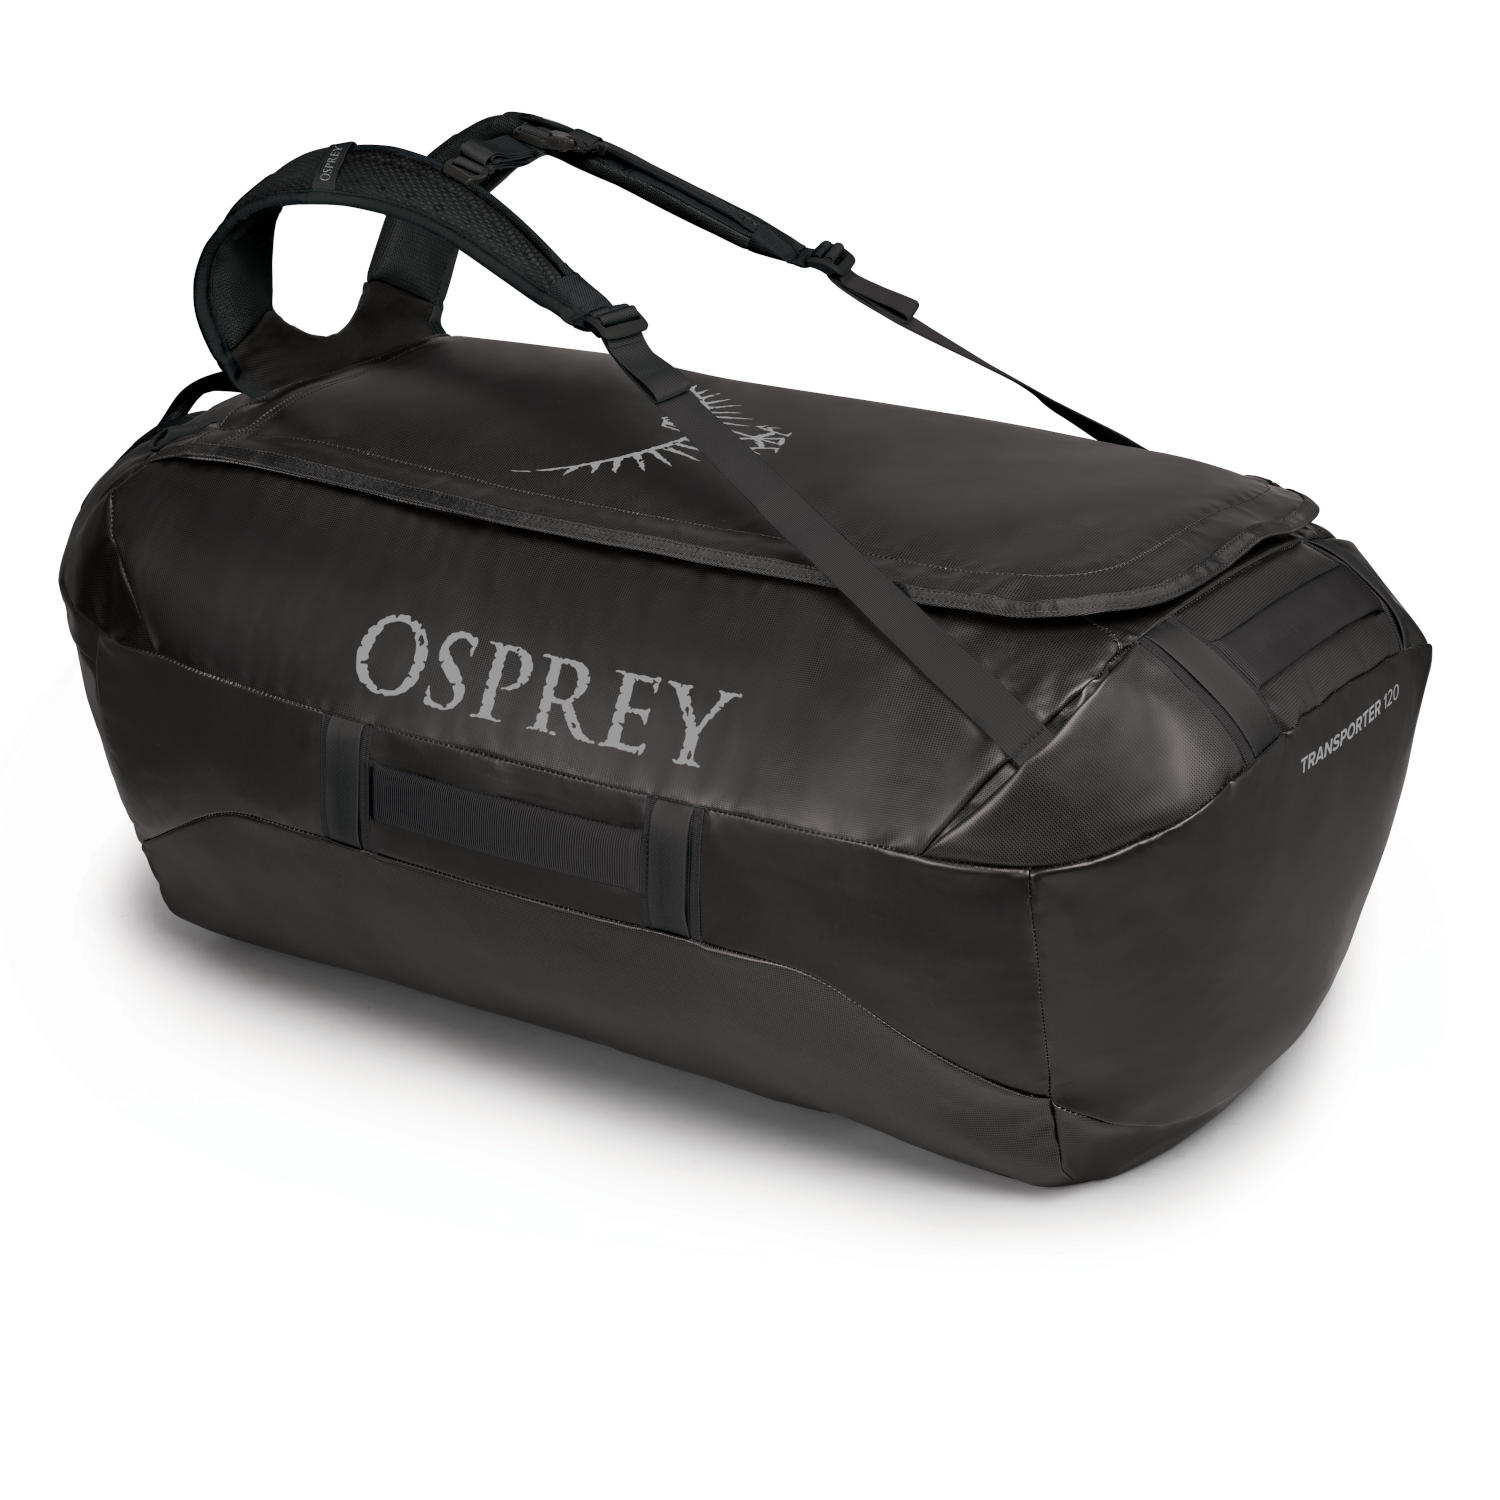 Picture of Osprey Transporter 120 Duffel Bag - Black